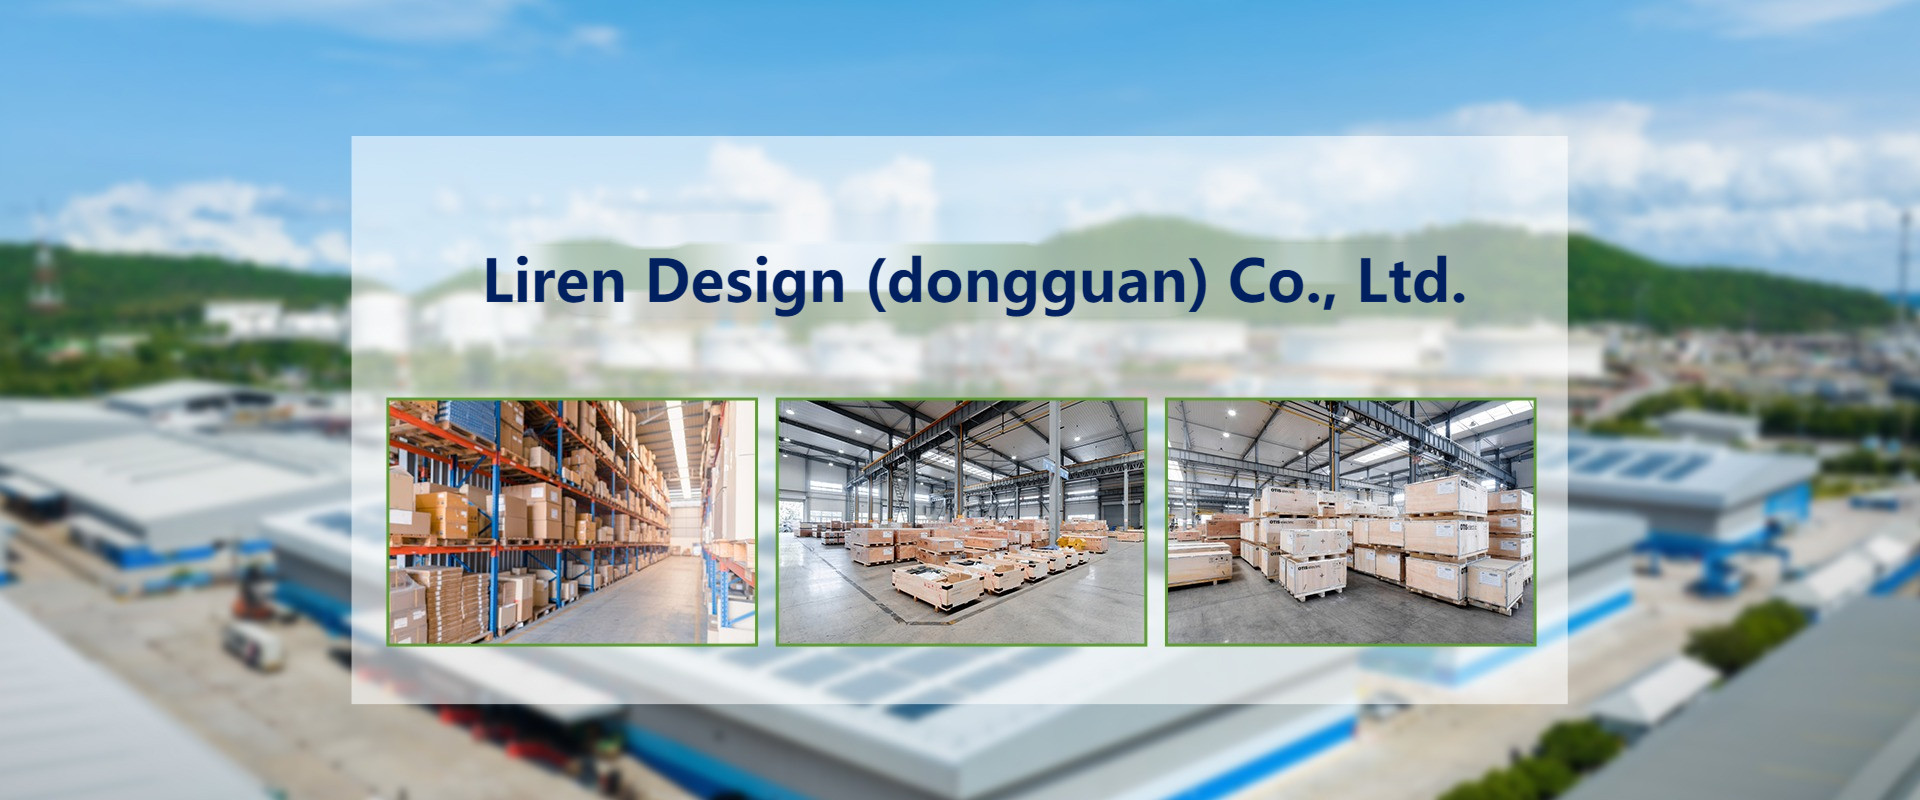 Liren Design (Dongguan) Co., Ltd.